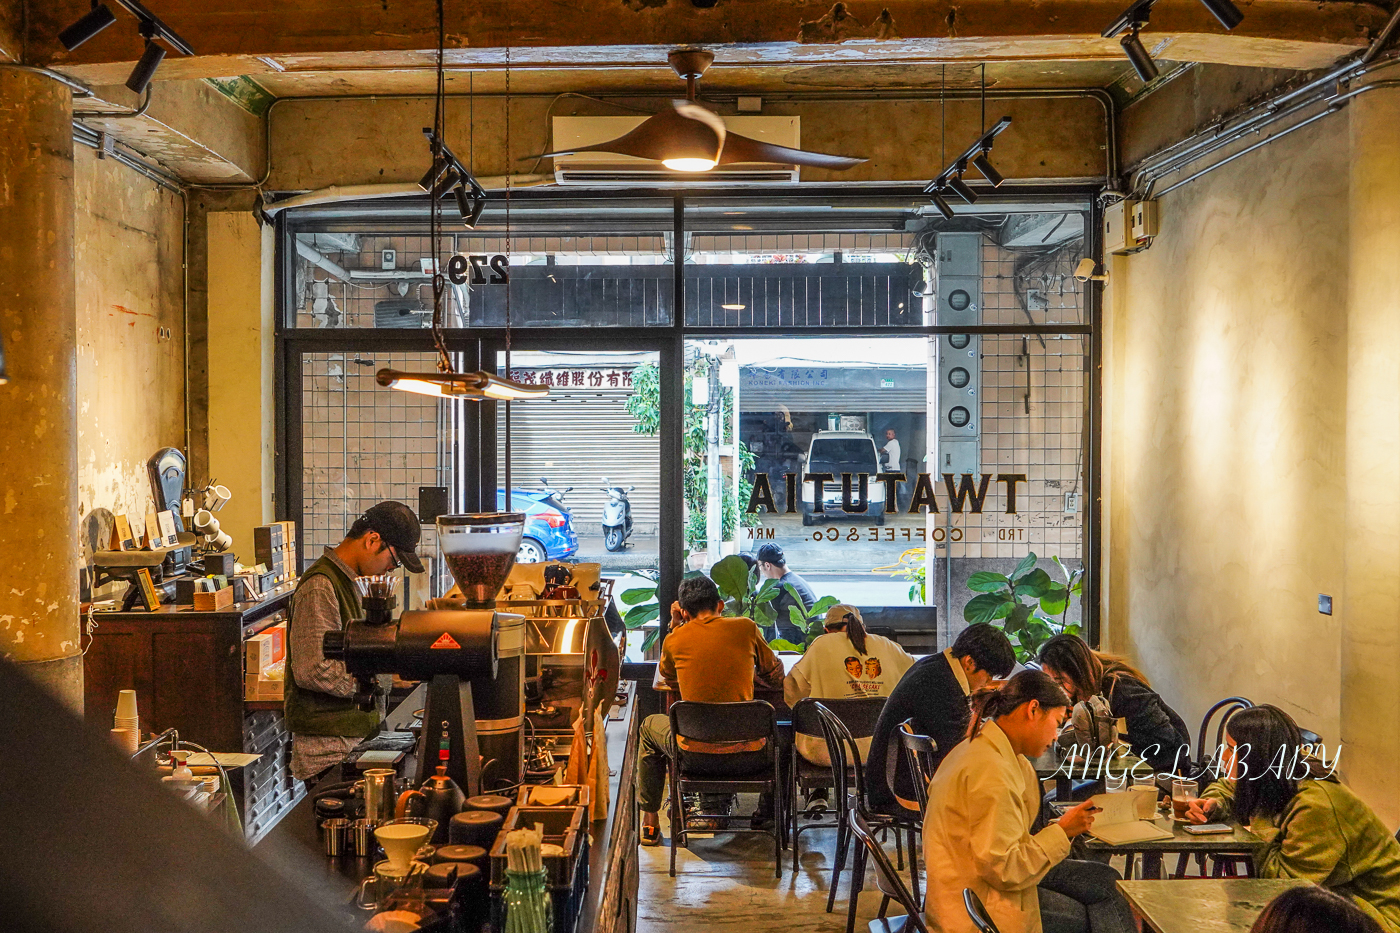 大稻埕咖啡｜老宅風選物咖啡『TWATUTIA Coffee &#038; Co.』菜單 @梅格(Angelababy)享樂日記